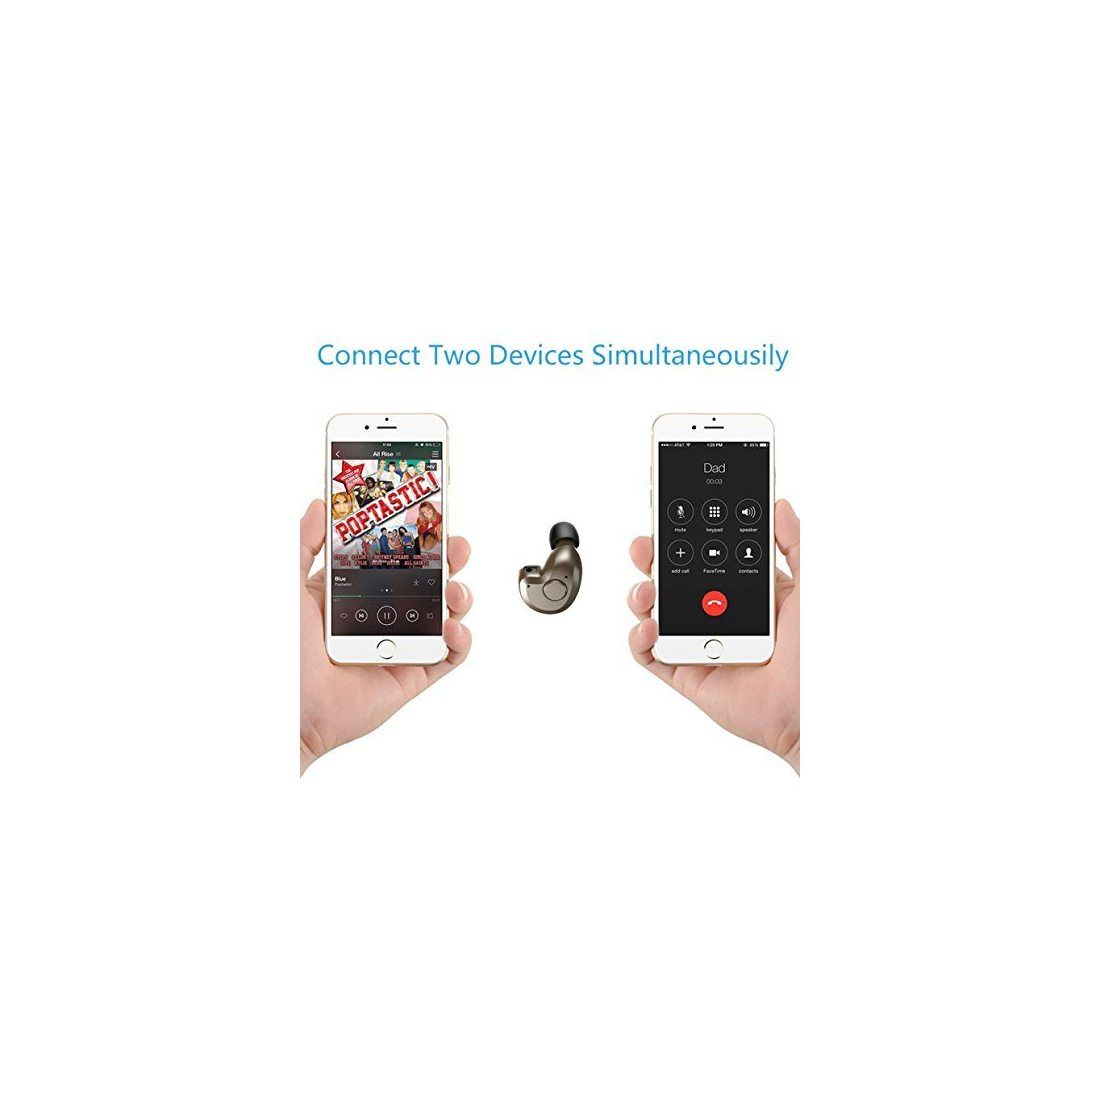 Oreillette Bluetooth 4.1, AngLink mini Écouteur Bluetooth AVEC MICRO Oreillette sans fil Mains-libres pour iPhone, Samsung Ga